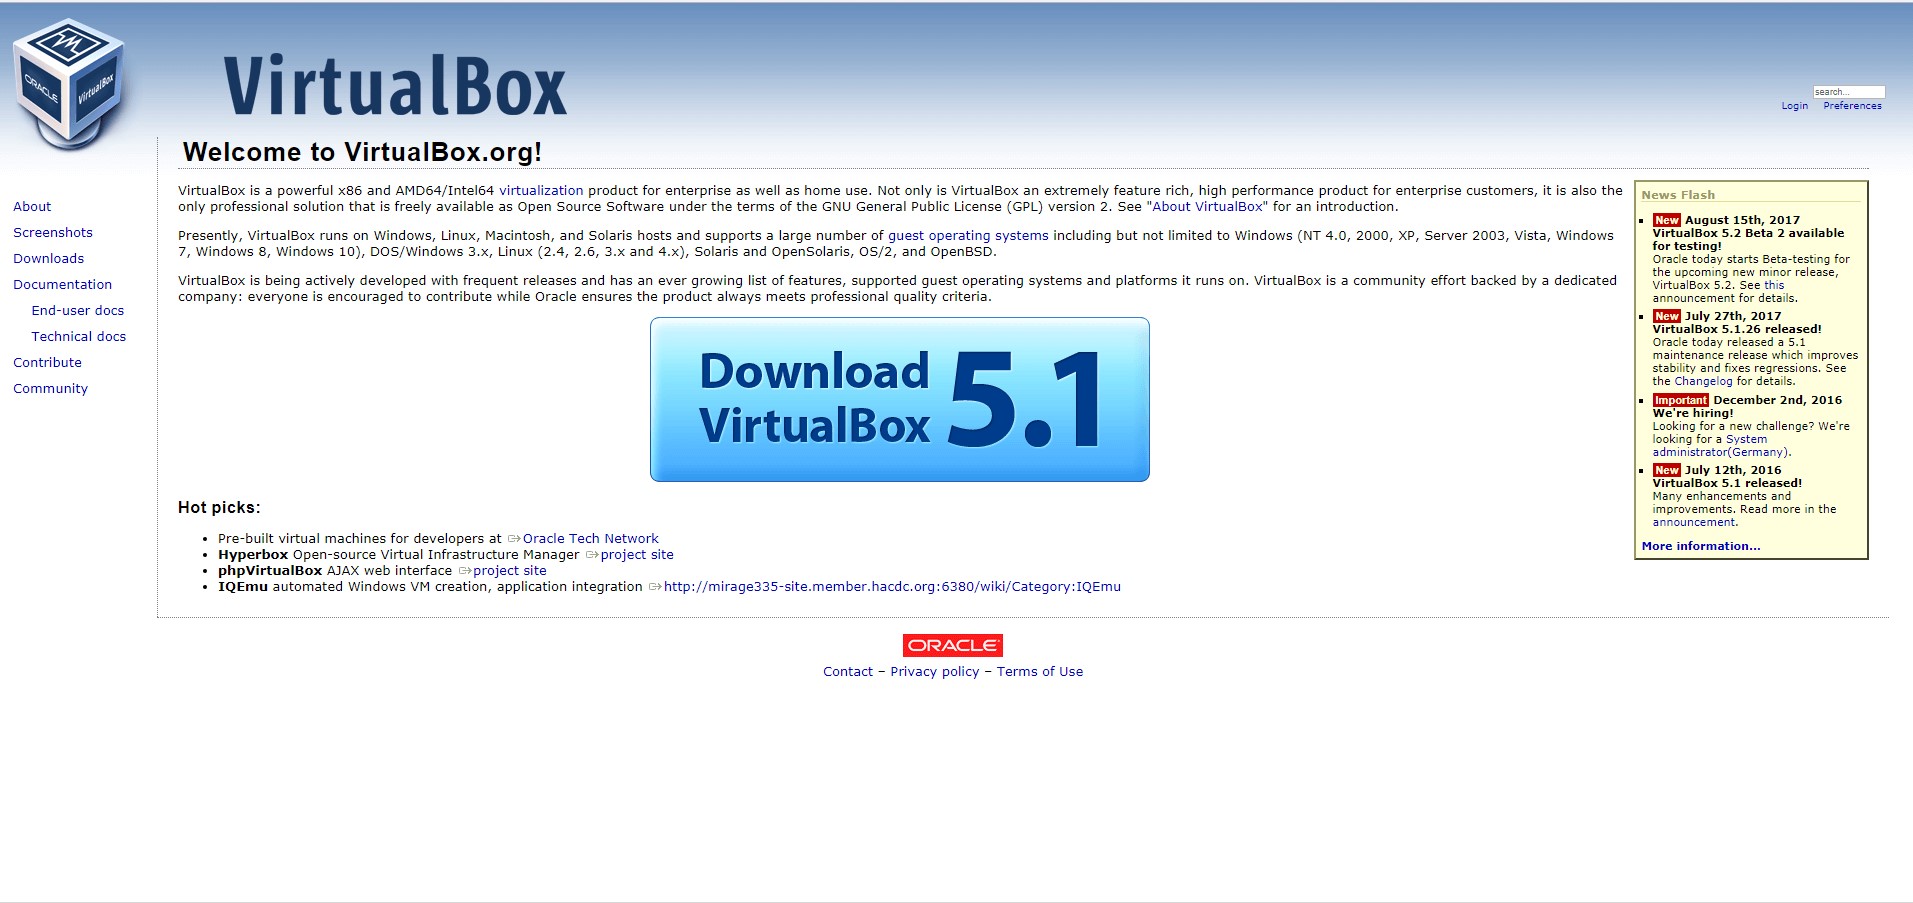 virtualbox for windows 10 32 bit free download